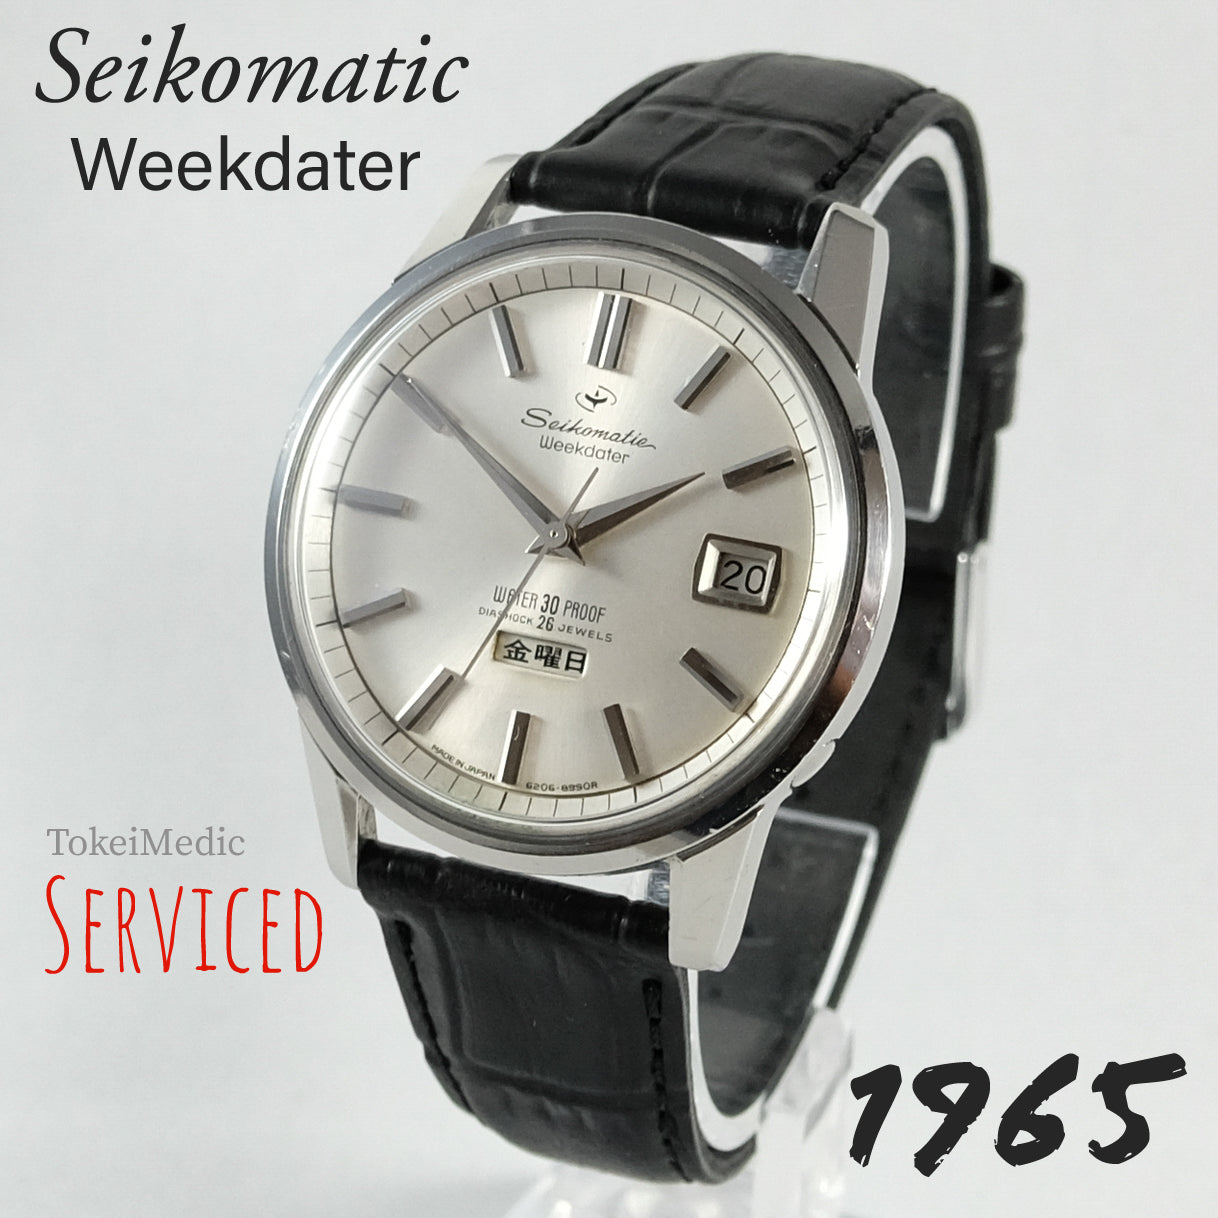 1965 Seiko Seikomatic Weekdater 6206-8990